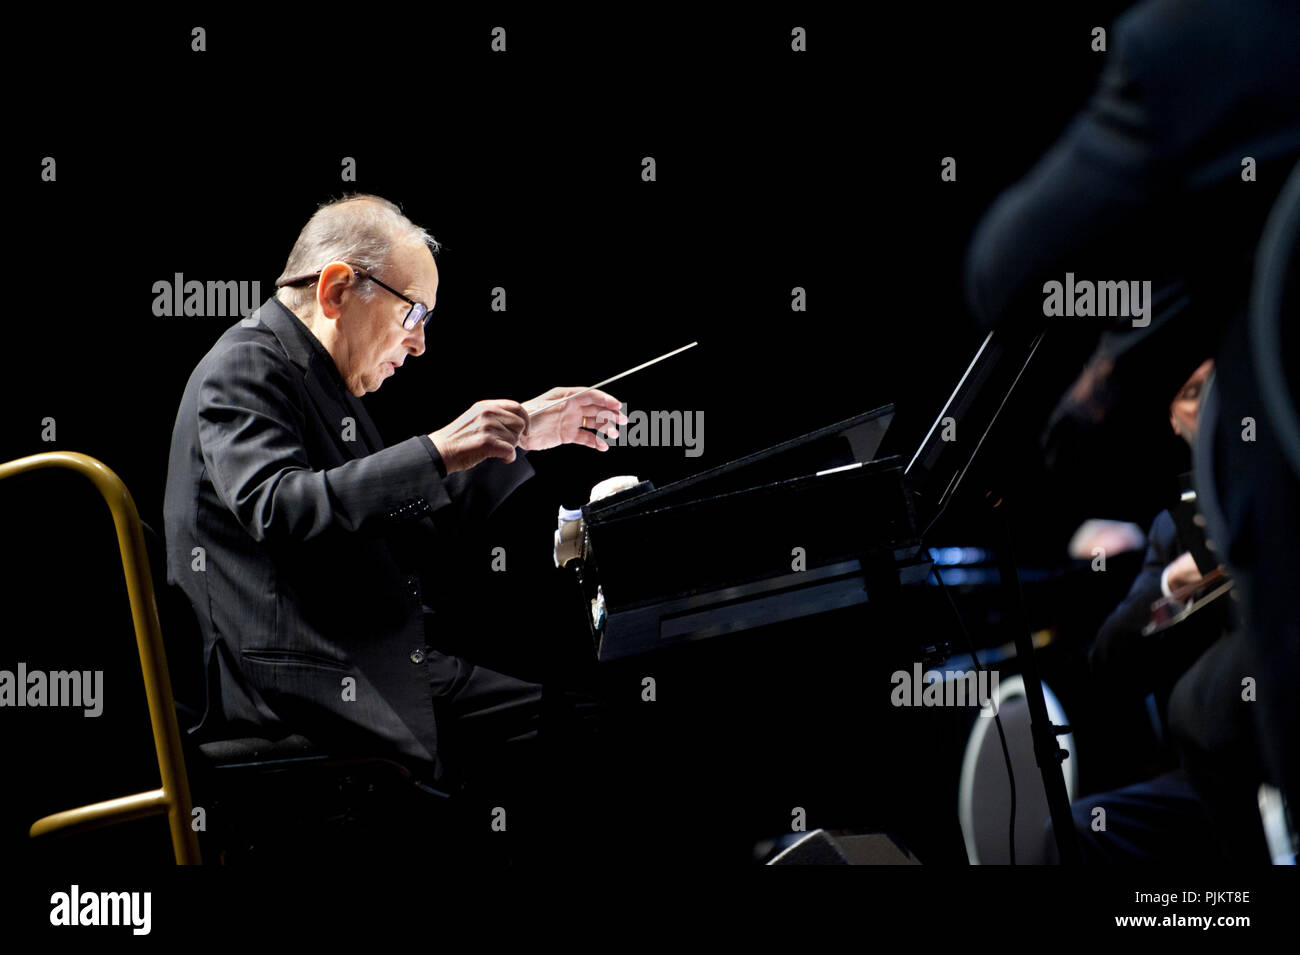 Le compositeur italien Ennio Morricone effectuant ses 60 années de musique World Tour concert au Sportpaleis, Anvers (Belgique, 20/02/2016) Banque D'Images